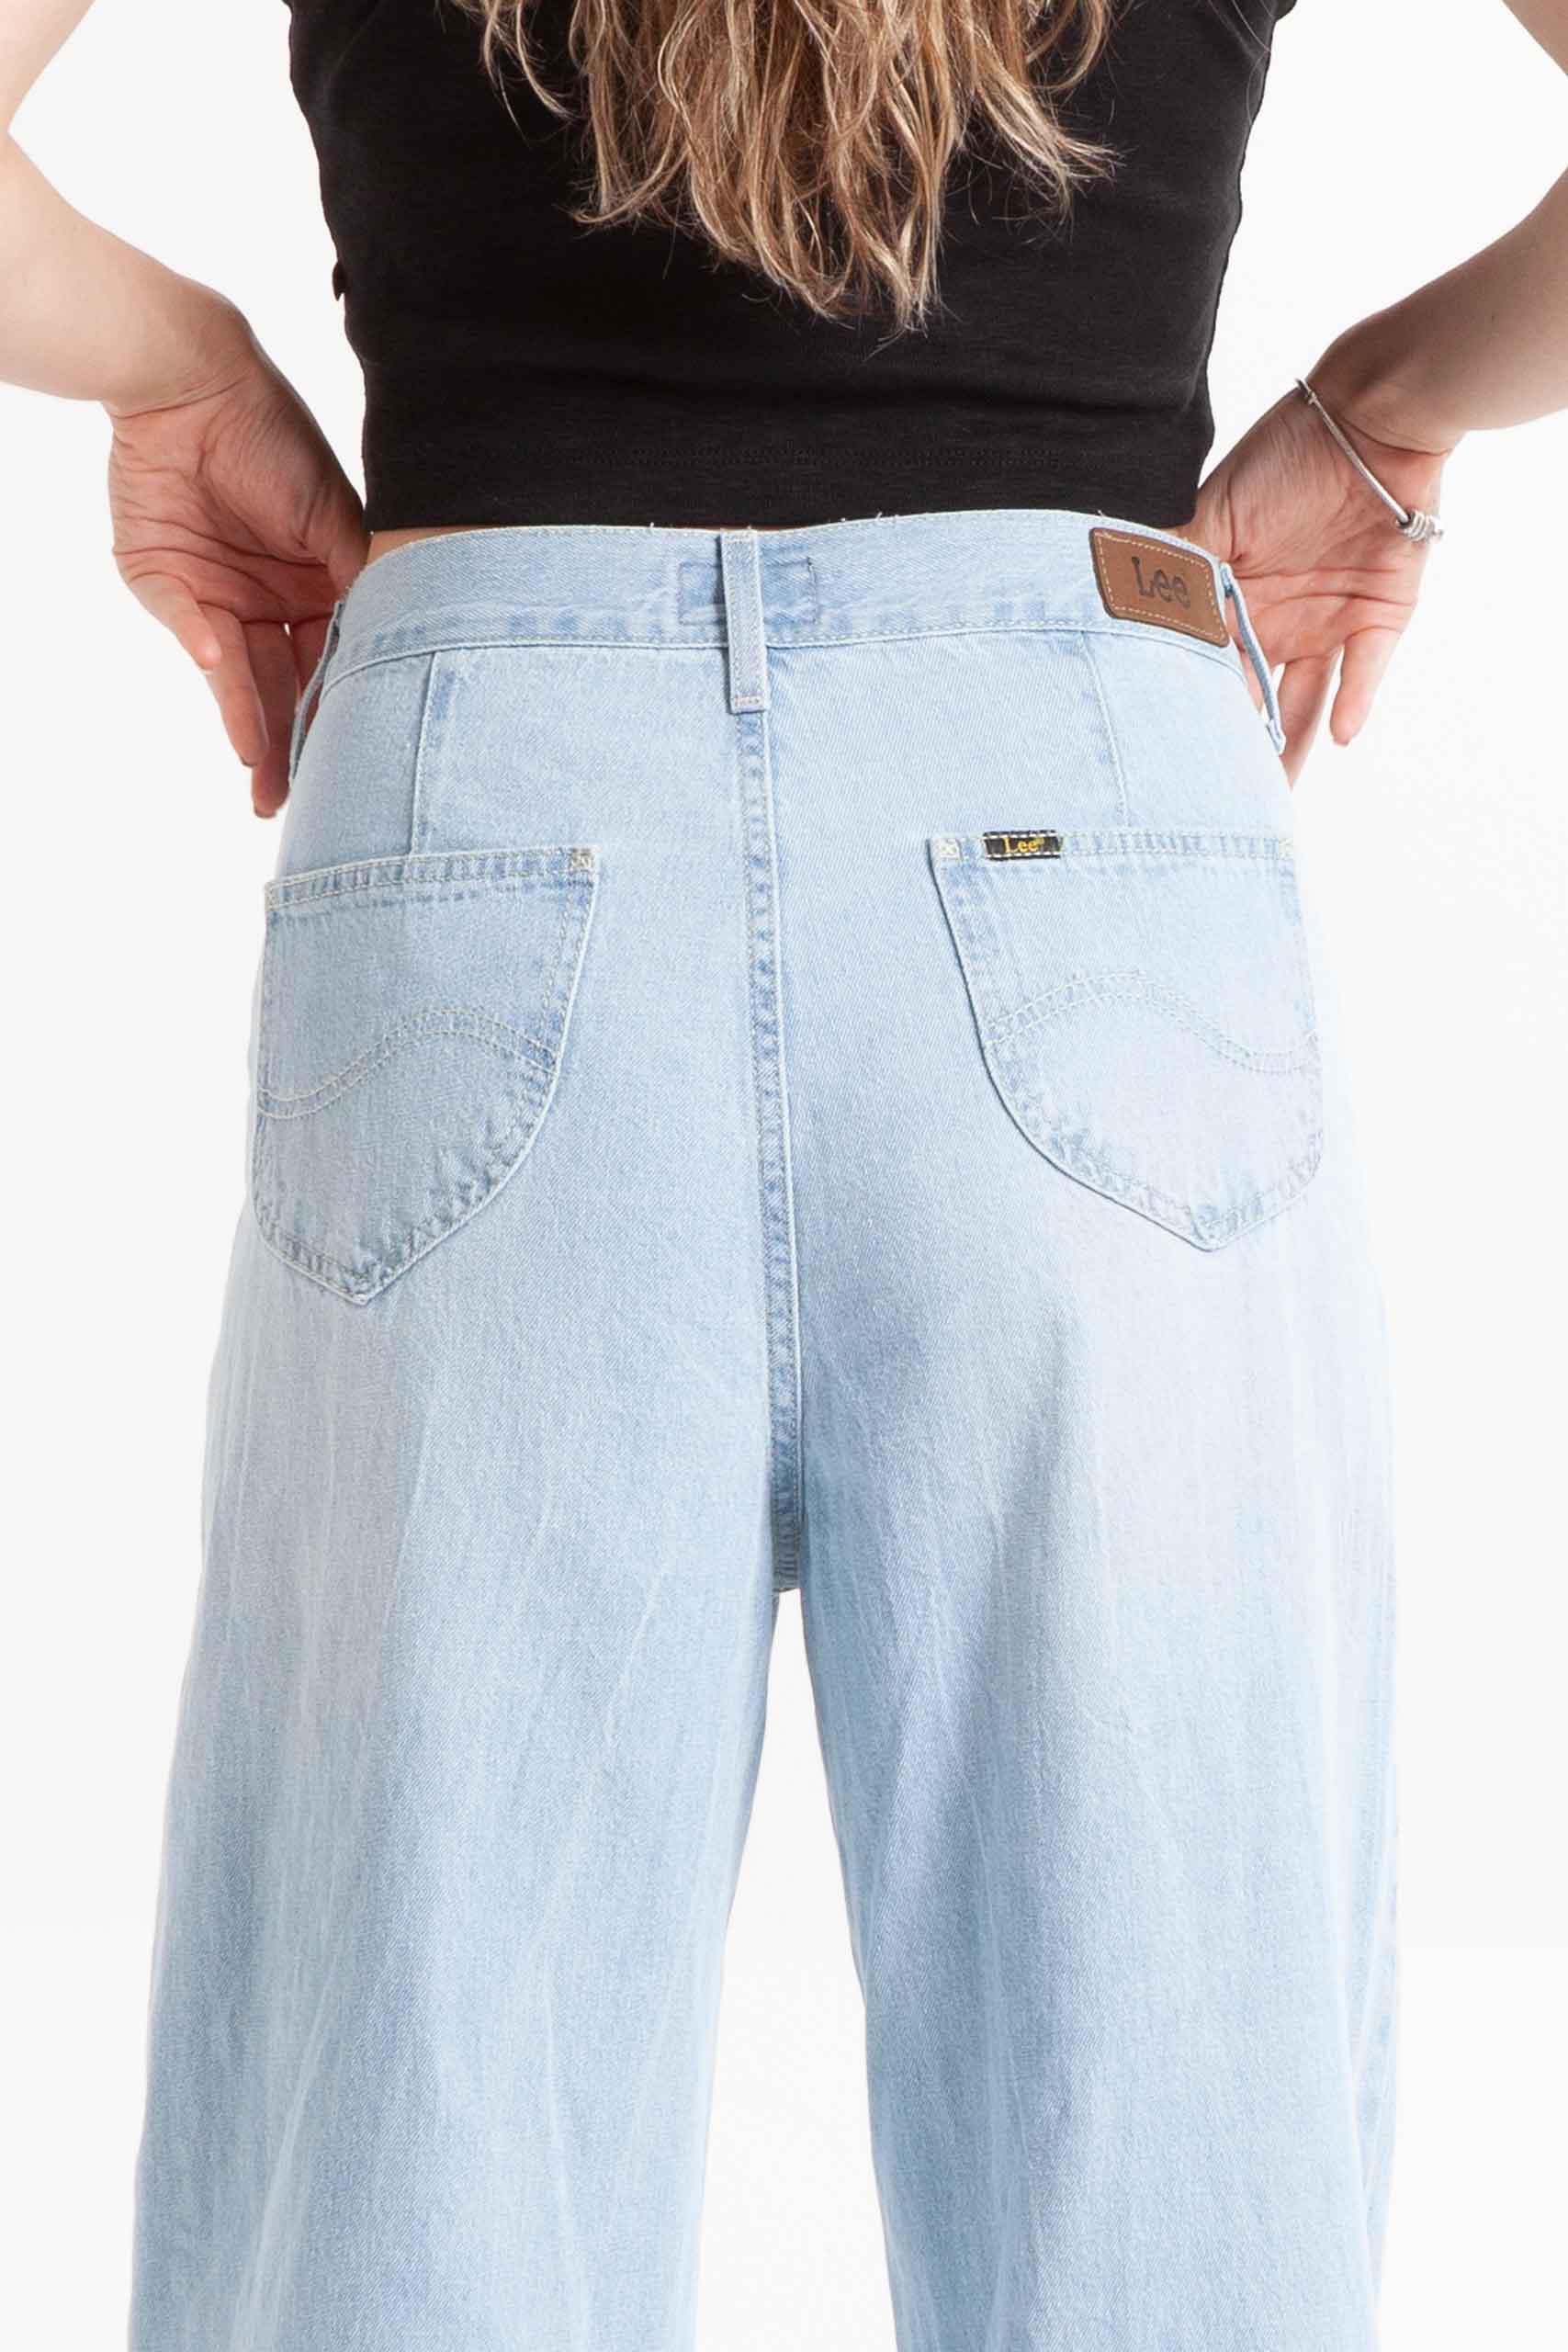 Vista posterior de jean de color azul de pierna ancha con bolsillos de marca lee